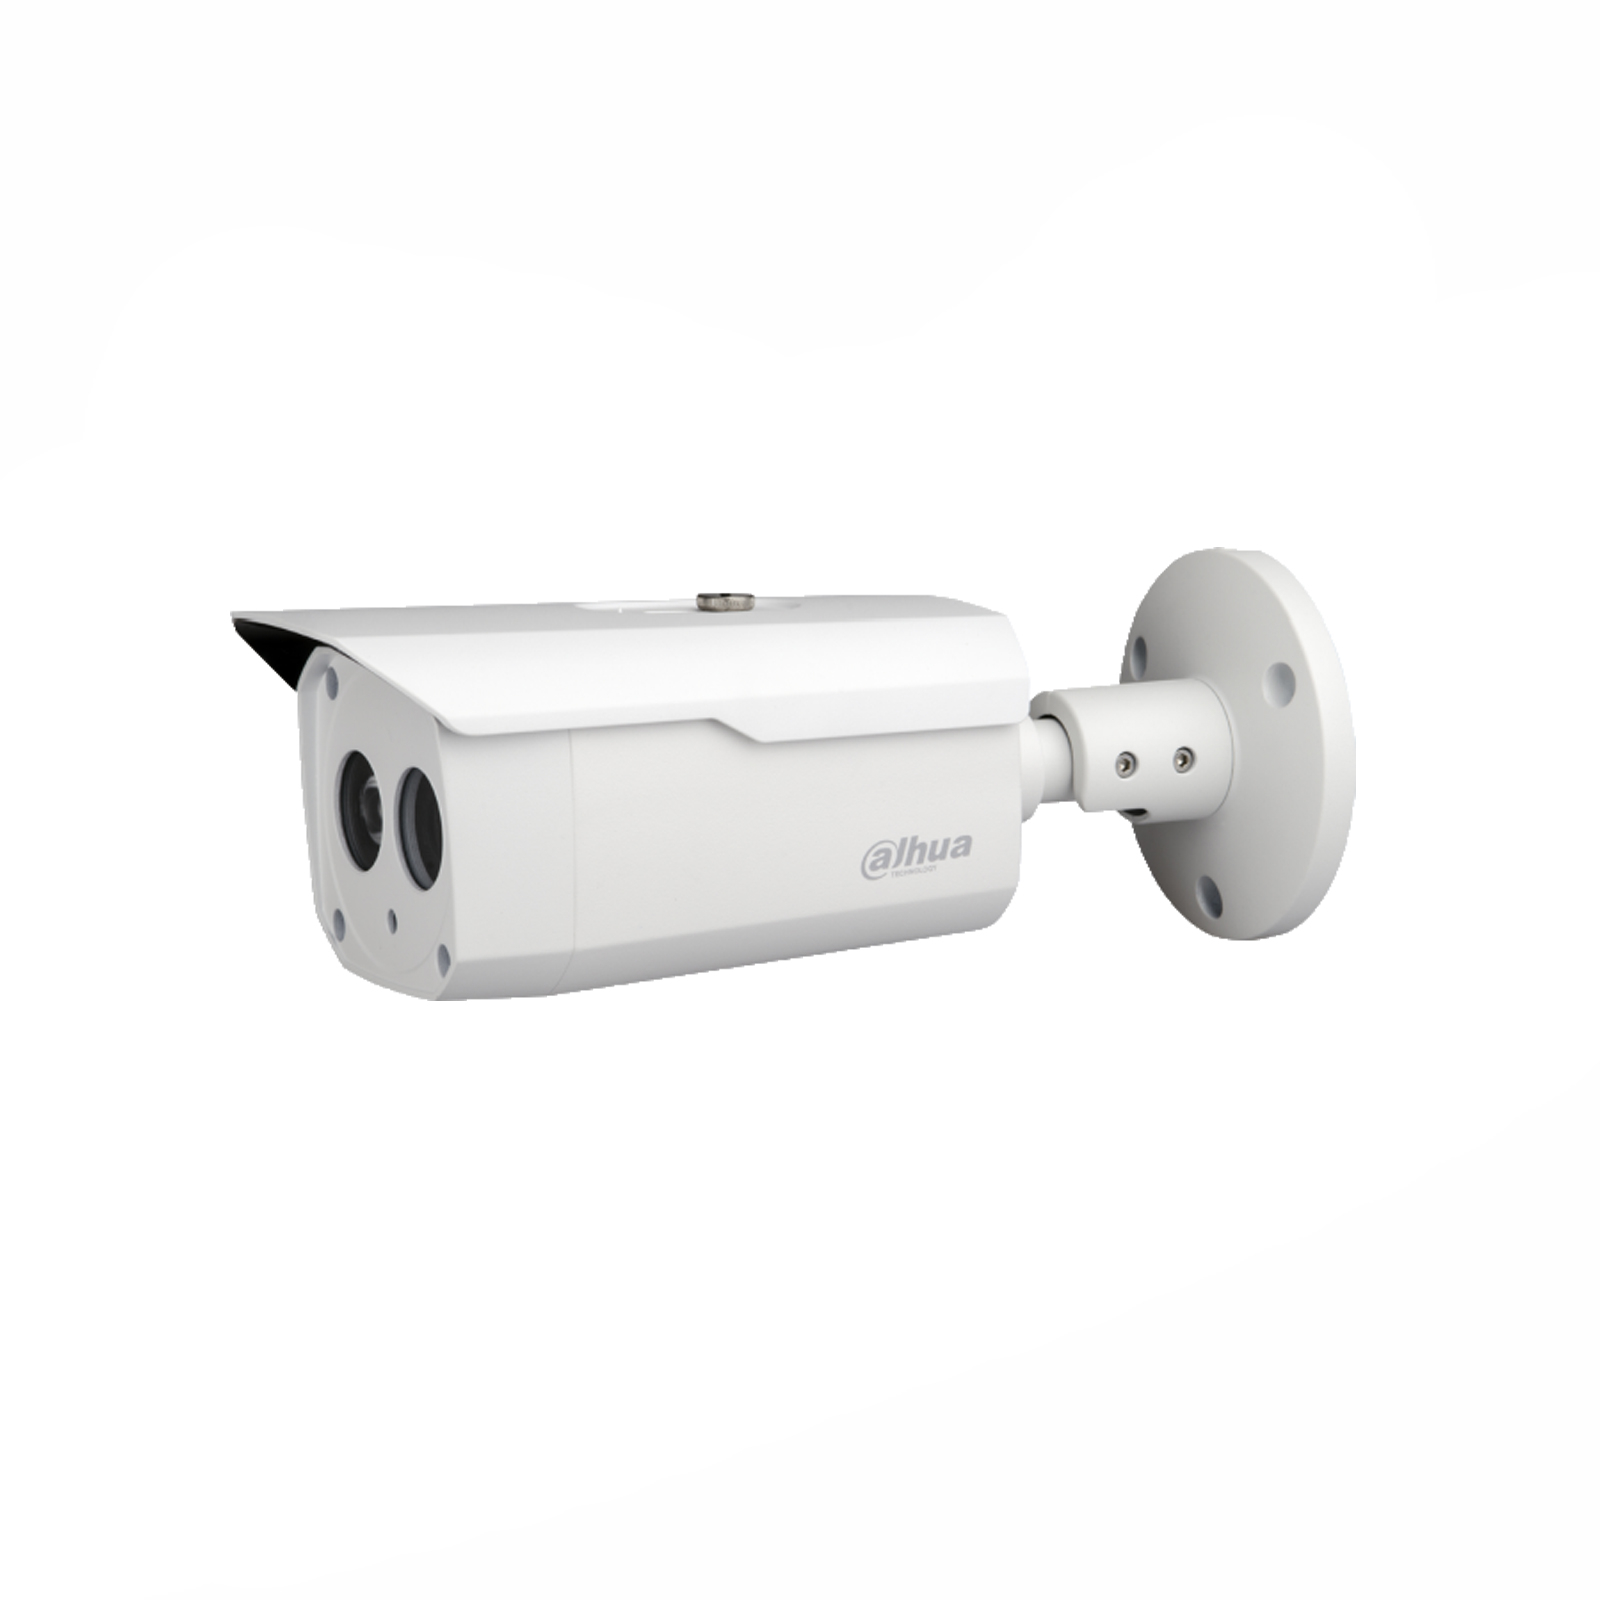 Telecamera Bullet con risoluzione 720P e ottica fissa 3.6mm. IP67